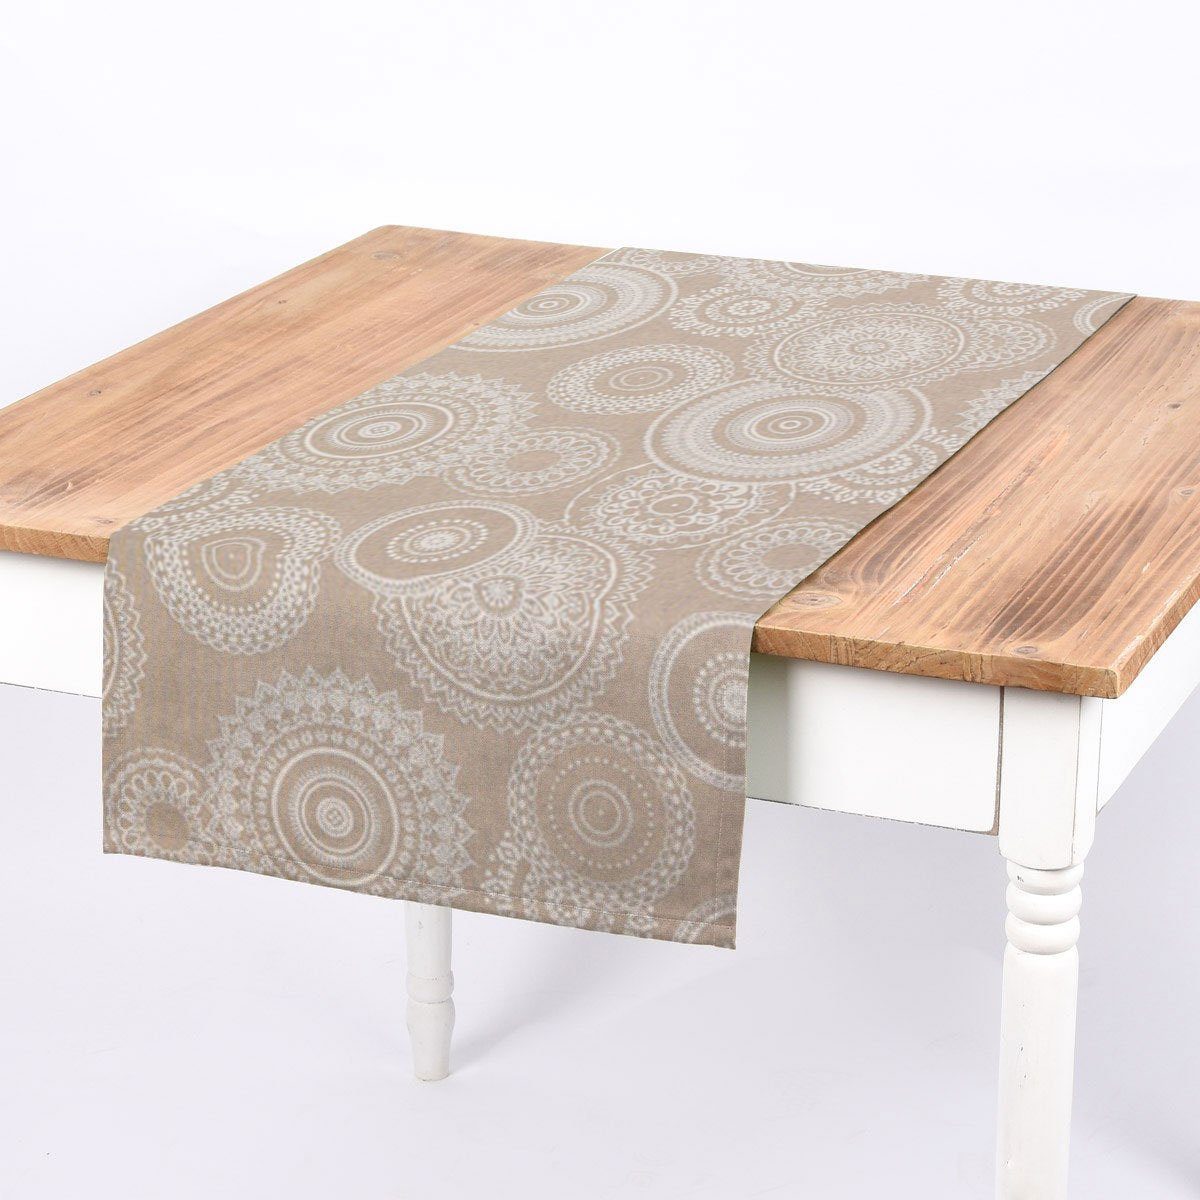 SCHÖNER LEBEN. Tischläufer SCHÖNER LEBEN. Tischläufer Kreise Ornamente natur weiß 40x160cm, handmade | Tischläufer